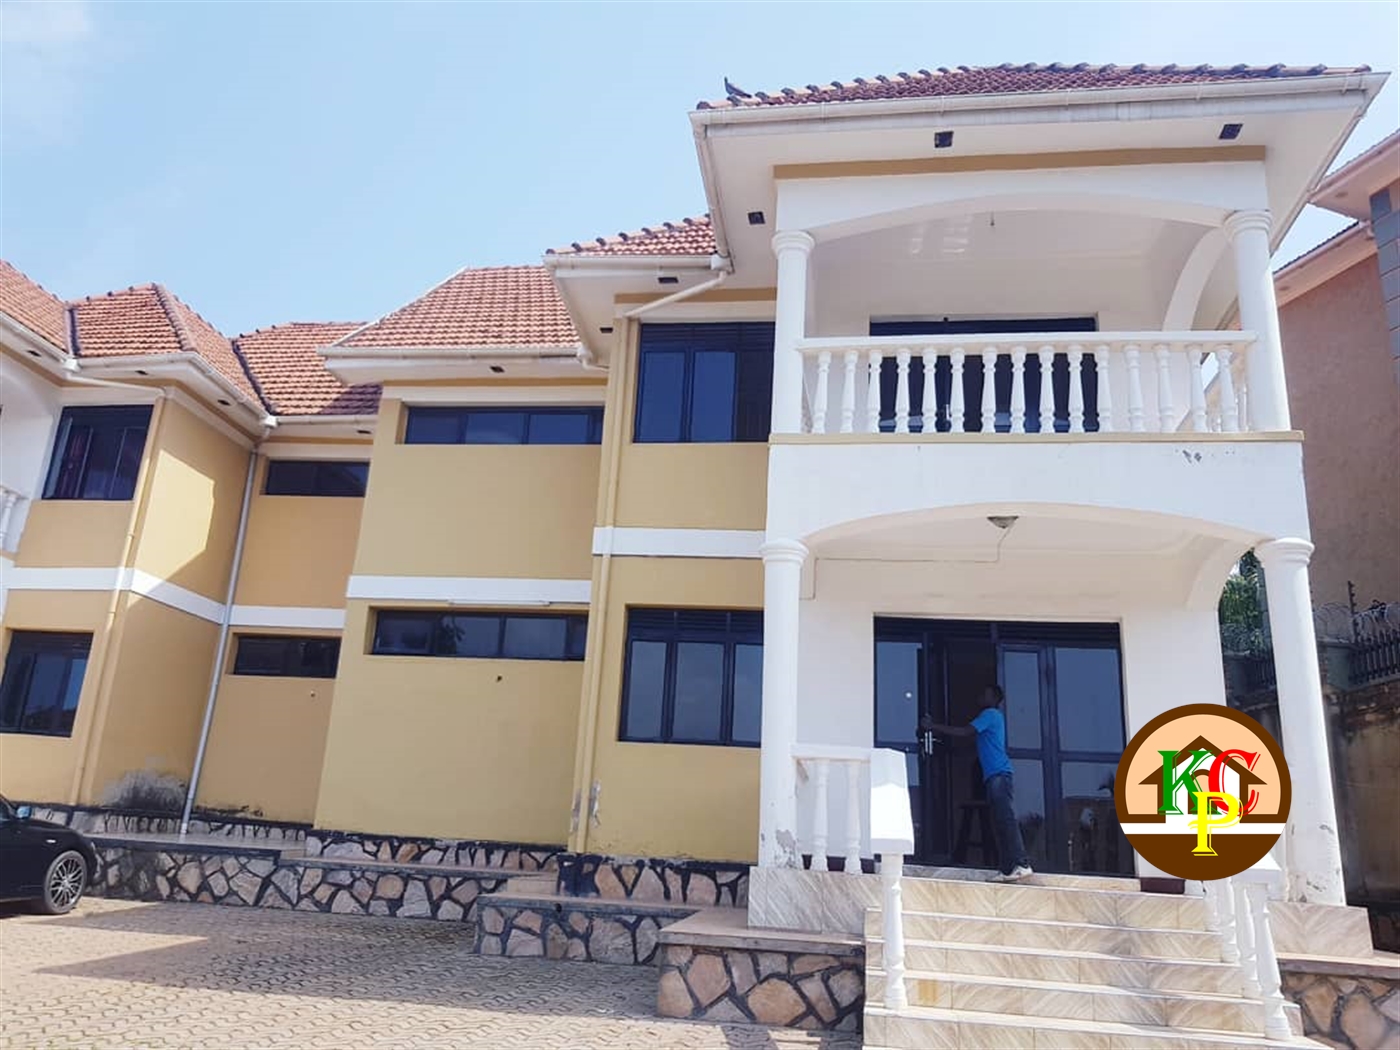 Duplex for rent in Muyenga Kampala